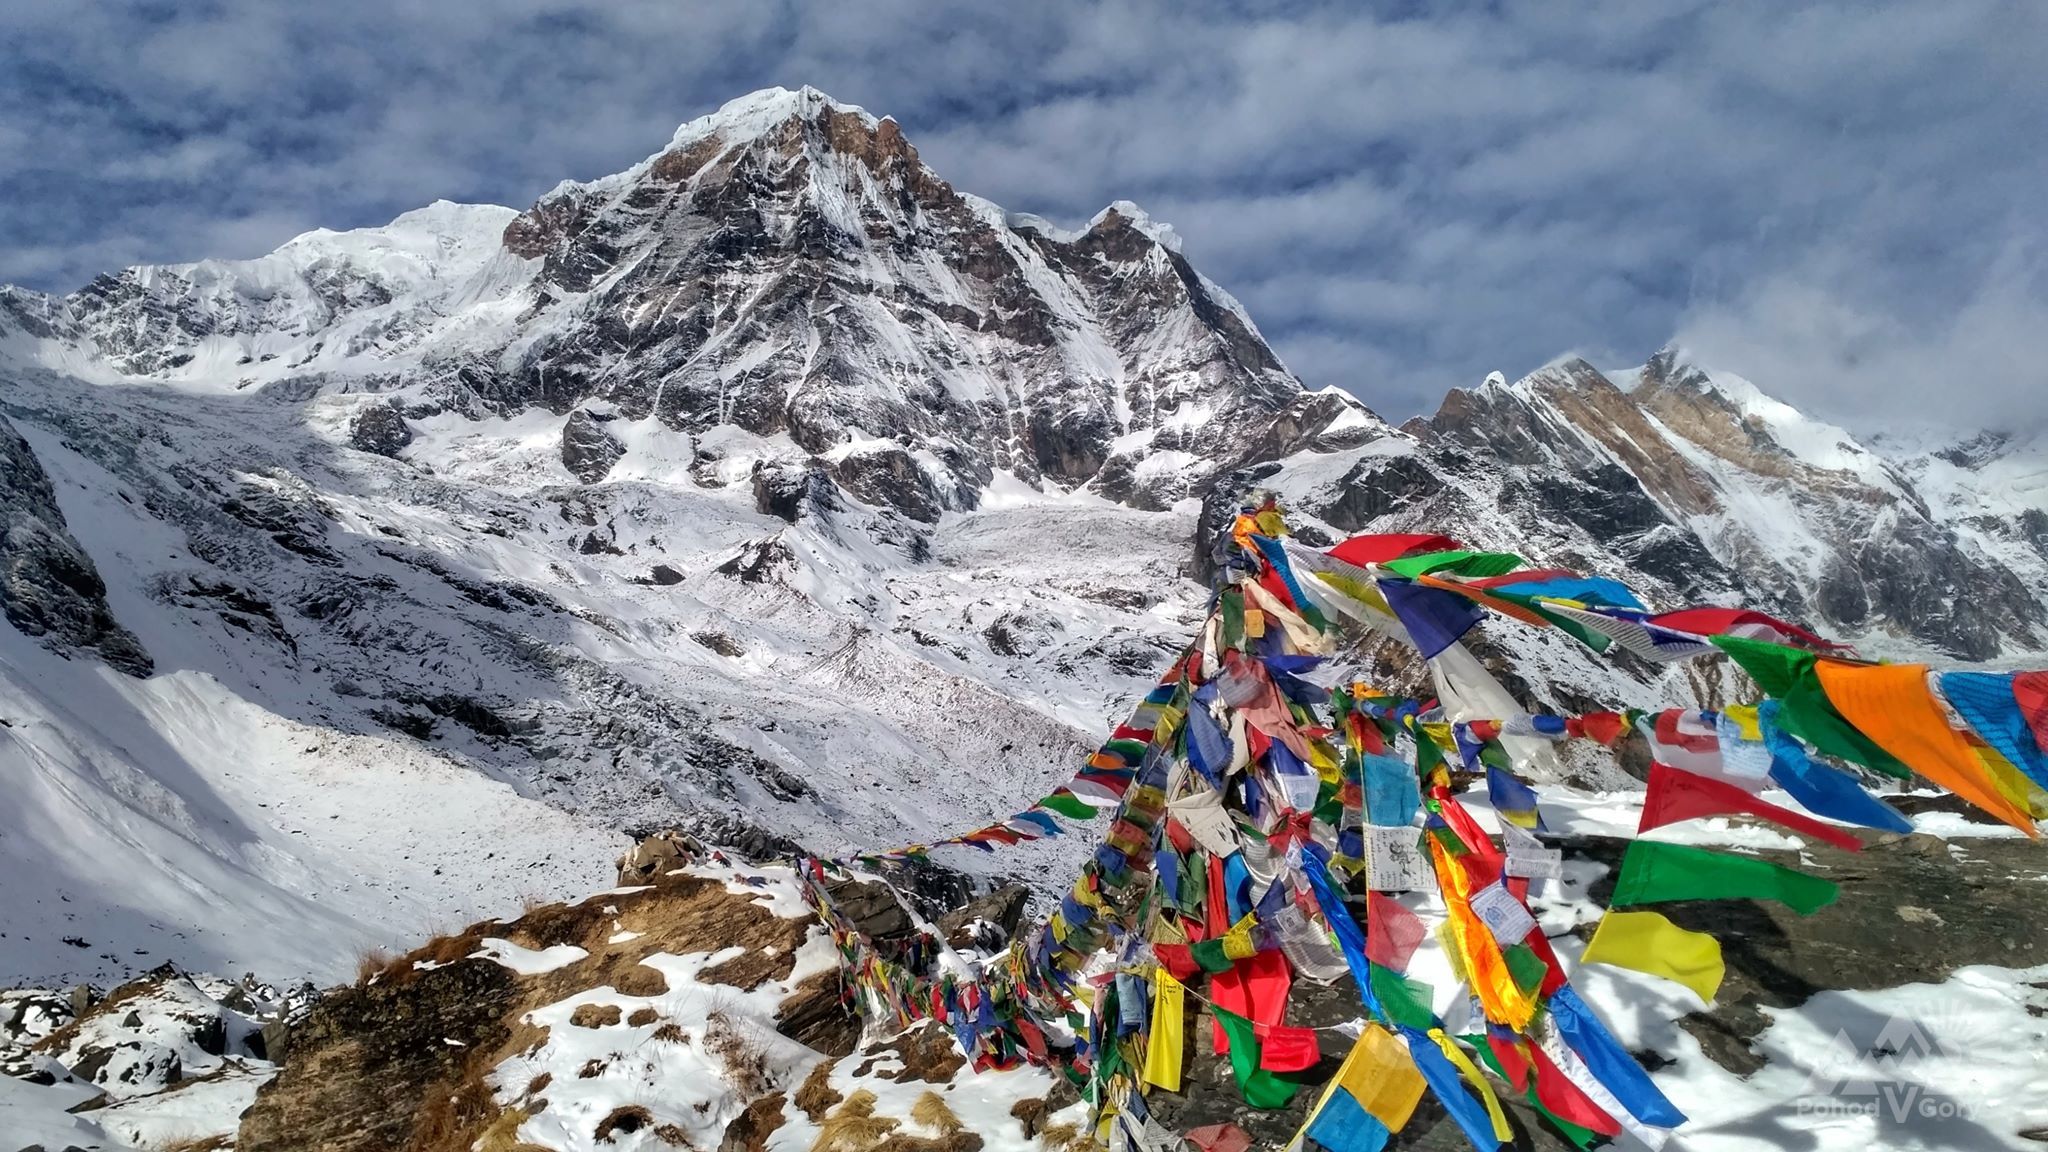 Доле непал. Непал Аннапурна базовый лагерь. Гималаи Эверест базовый лагерь. Непал базовый лагерь Эвереста. Гора Аннапурна Эверест.